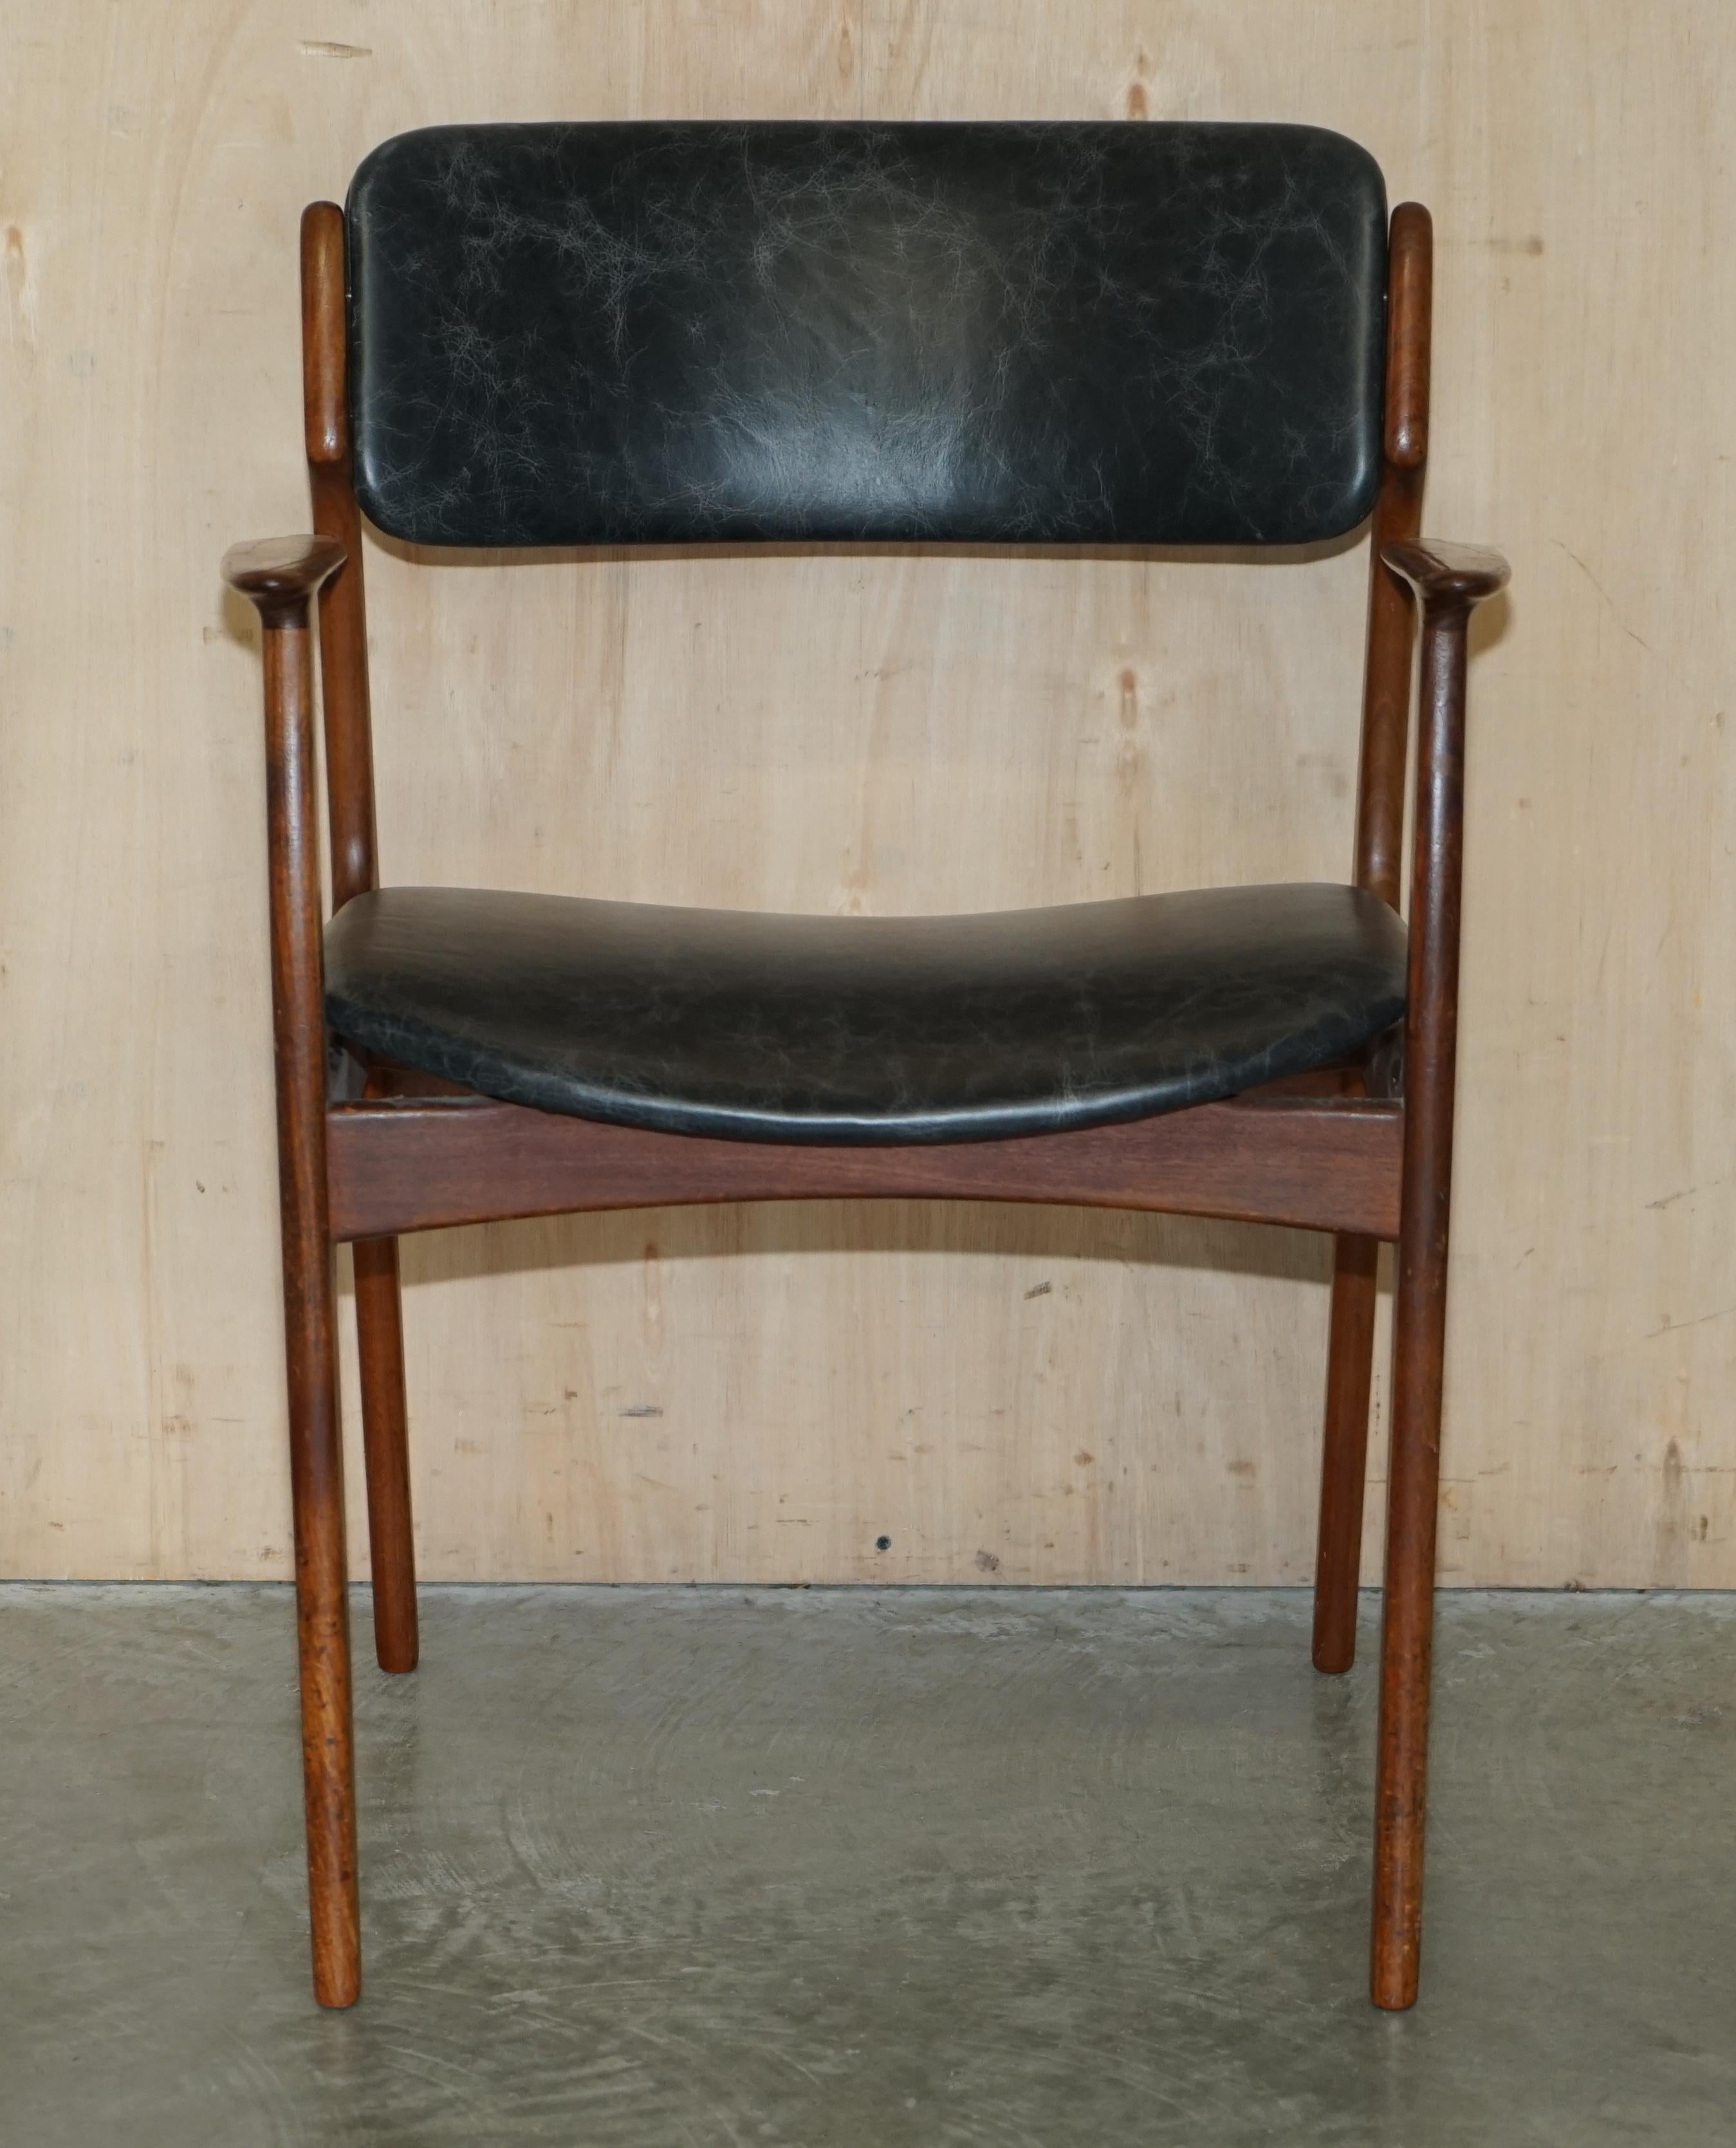 Royal House Antiques

The House Antiques a le plaisir d'offrir à la vente ce superbe fauteuil de bureau en teck danois Peter Lovig, datant de 1961, avec une nouvelle sellerie en cuir noir. 

Veuillez noter que les frais de livraison indiqués ne sont